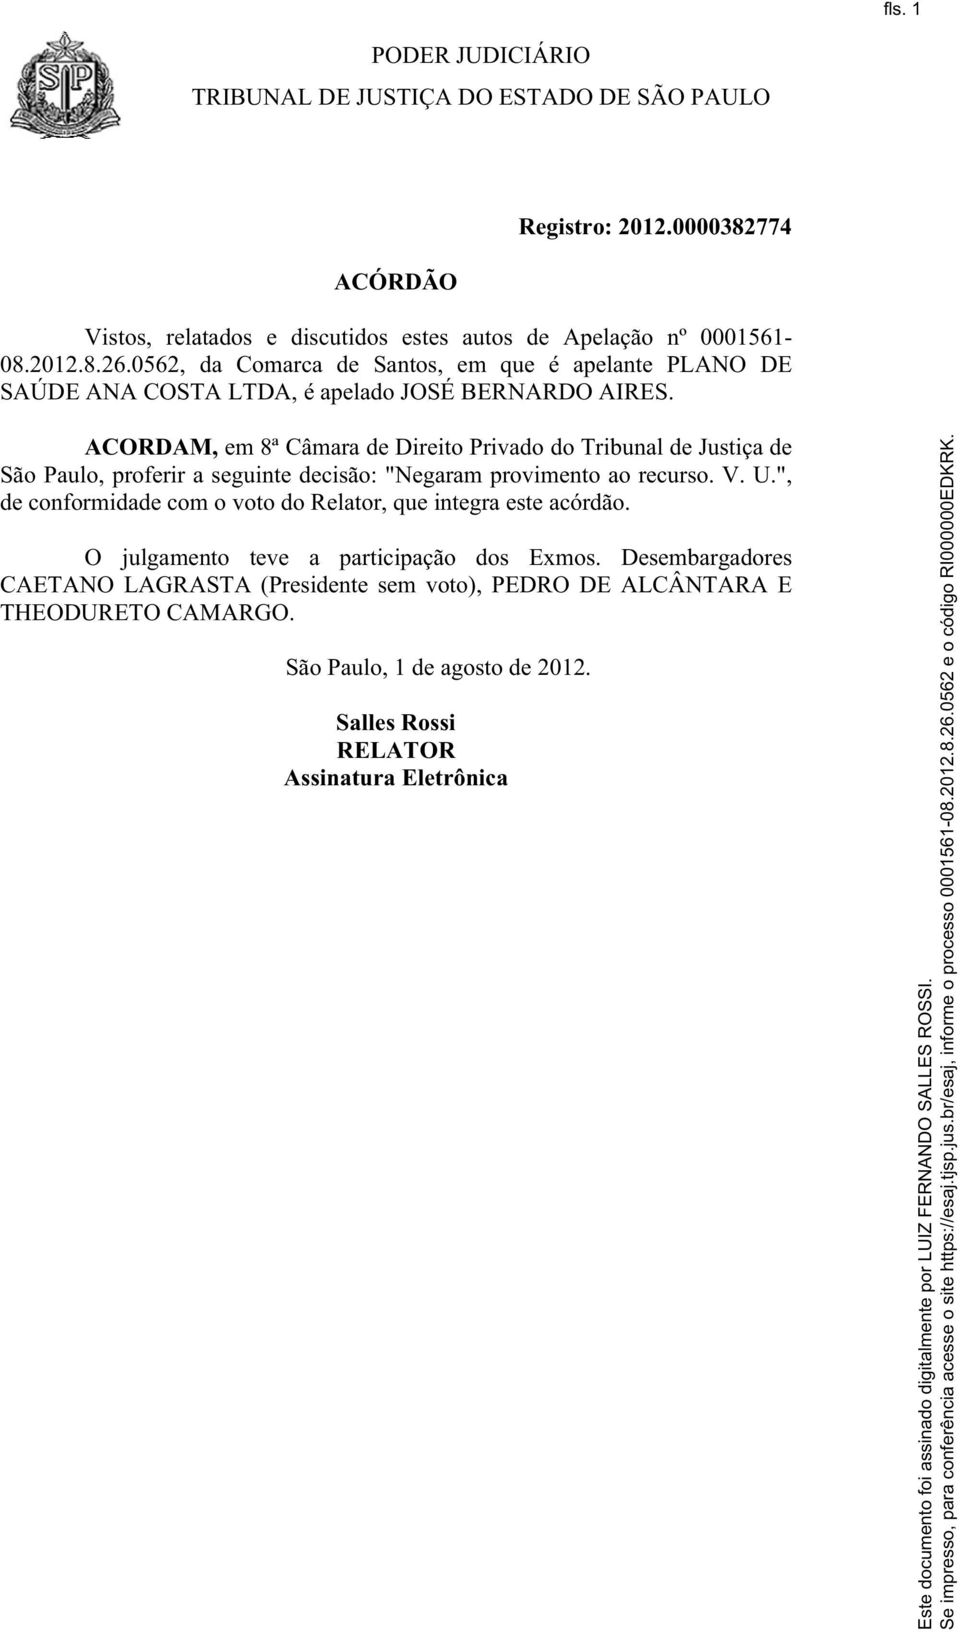 ACORDAM, em 8ª Câmara de Direito Privado do Tribunal de Justiça de São Paulo, proferir a seguinte decisão: "Negaram provimento ao recurso. V. U.